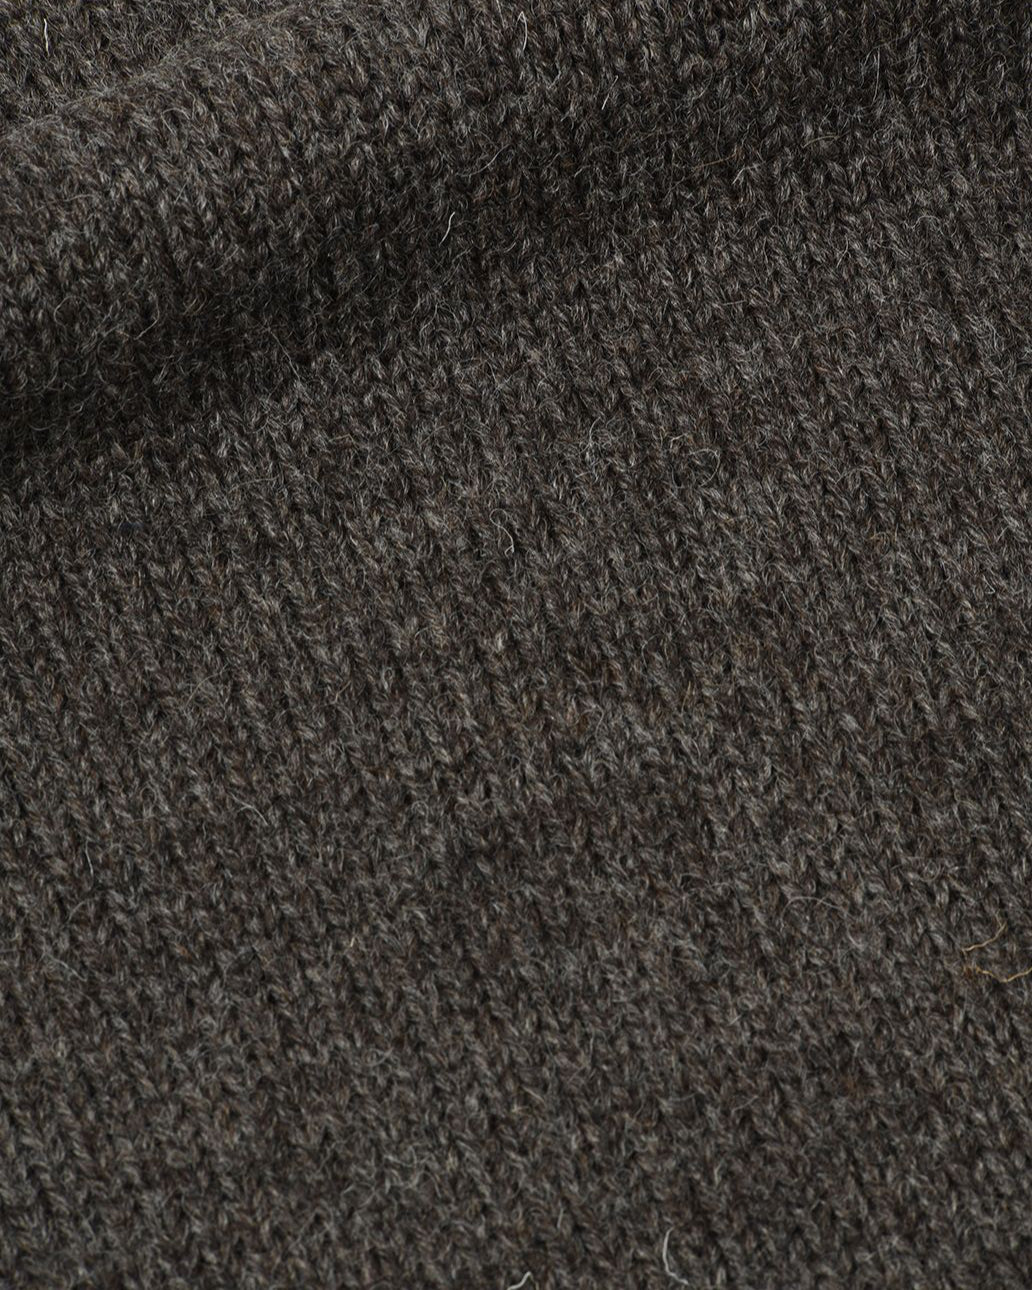 Wide Neck Sweater British Wool - Dark Natural